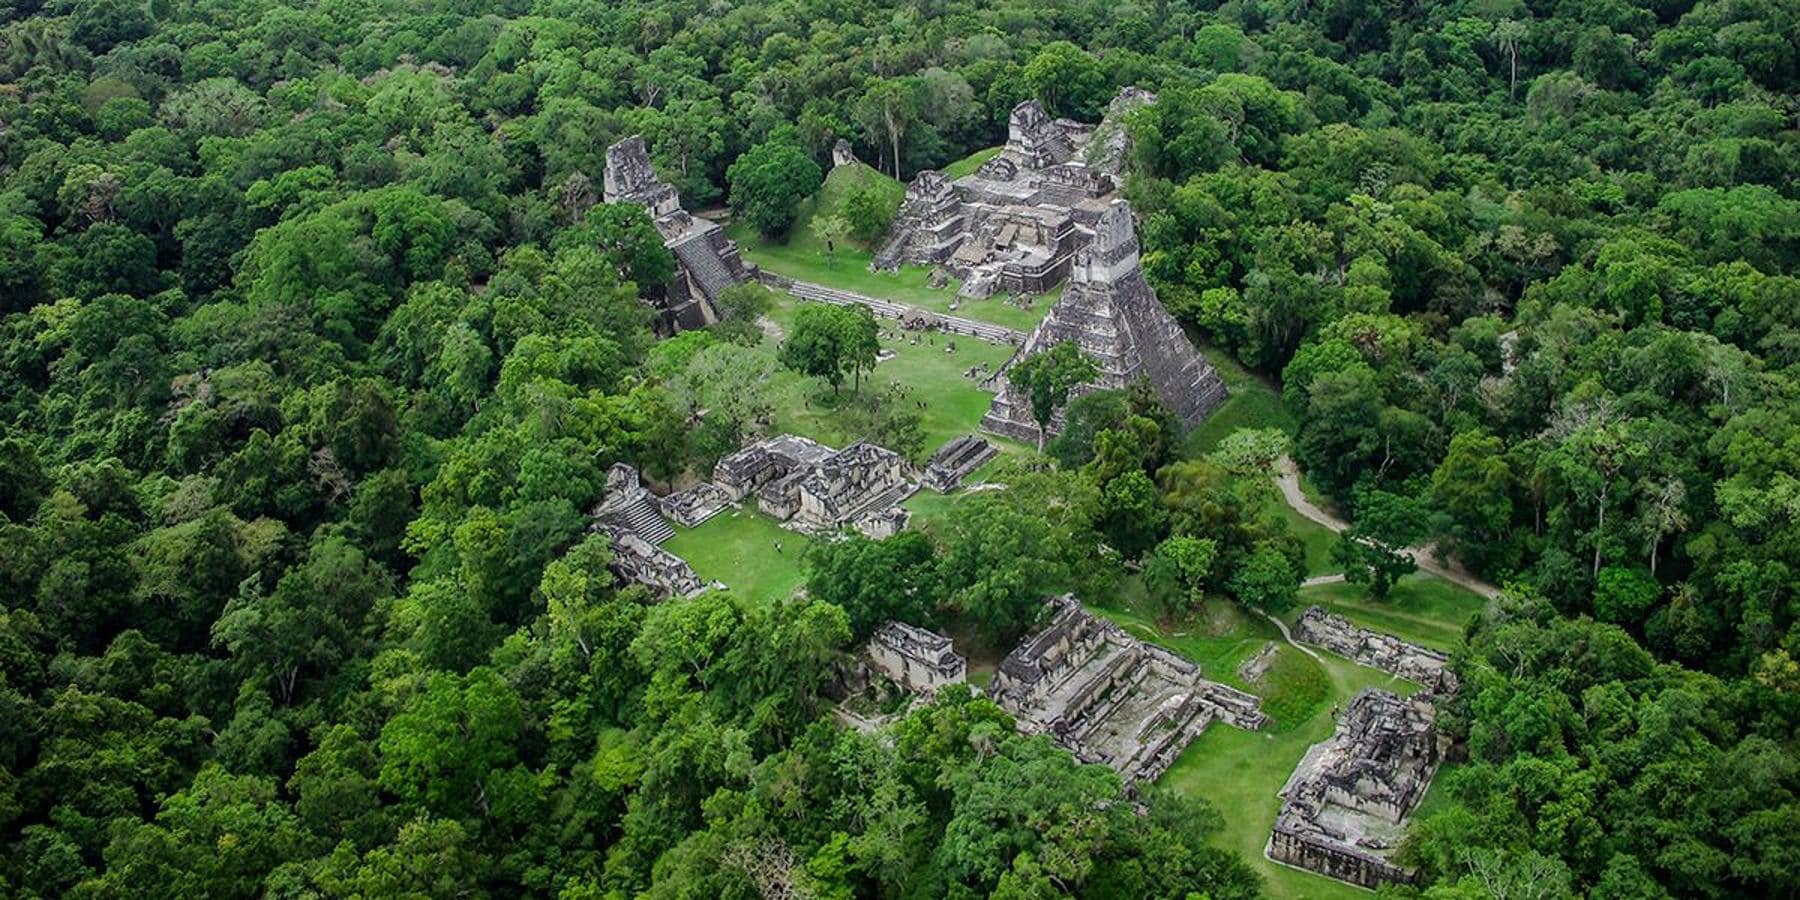 La ciudad más grande del mundo maya. Uno de los complejos de ruinas mayas más espectaculares, con más de 3000 en total, se puede encontrar en Tikal, situado en las selvas tropicales del norte de Guatemala, la ciudad más grande del mundo maya con algunos de los edificios que datan del siglo IV a.C.